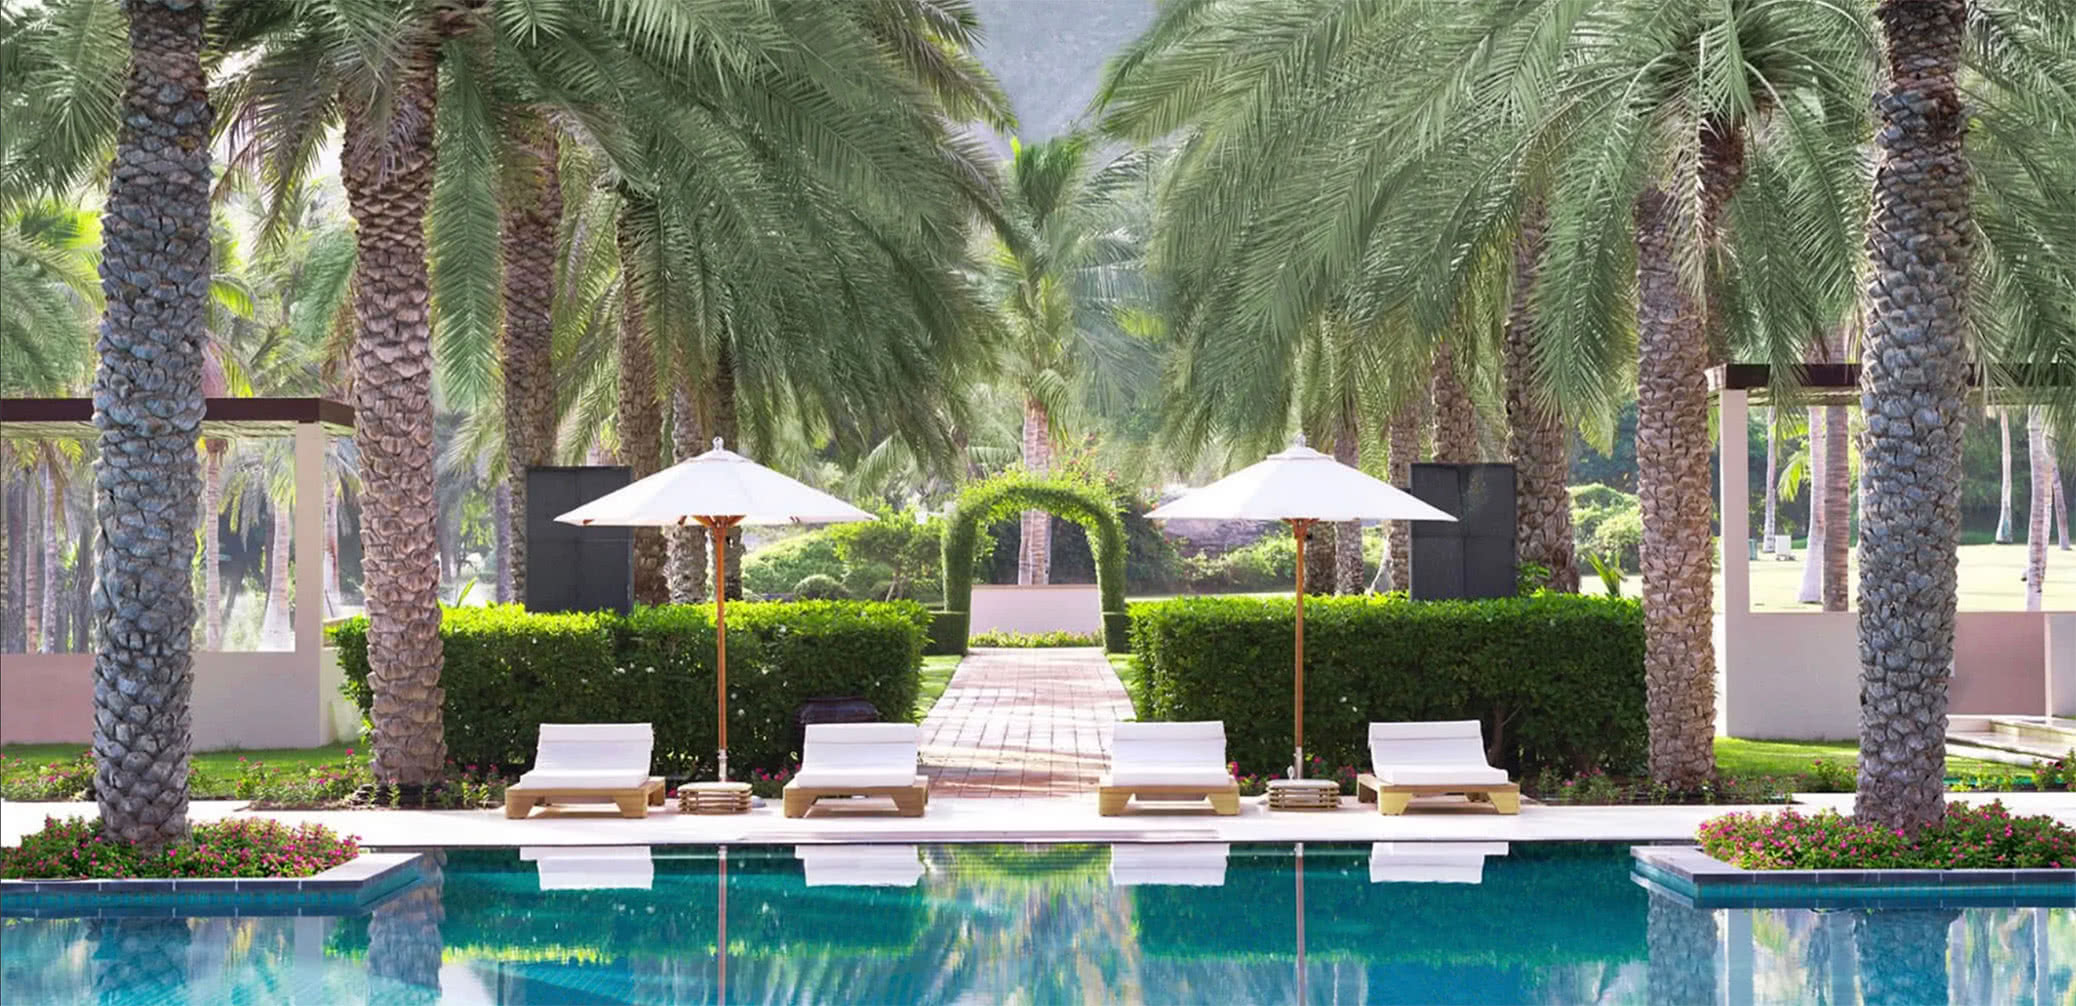 Review: Al Bustan Palace, A Ritz-Carlton Hotel